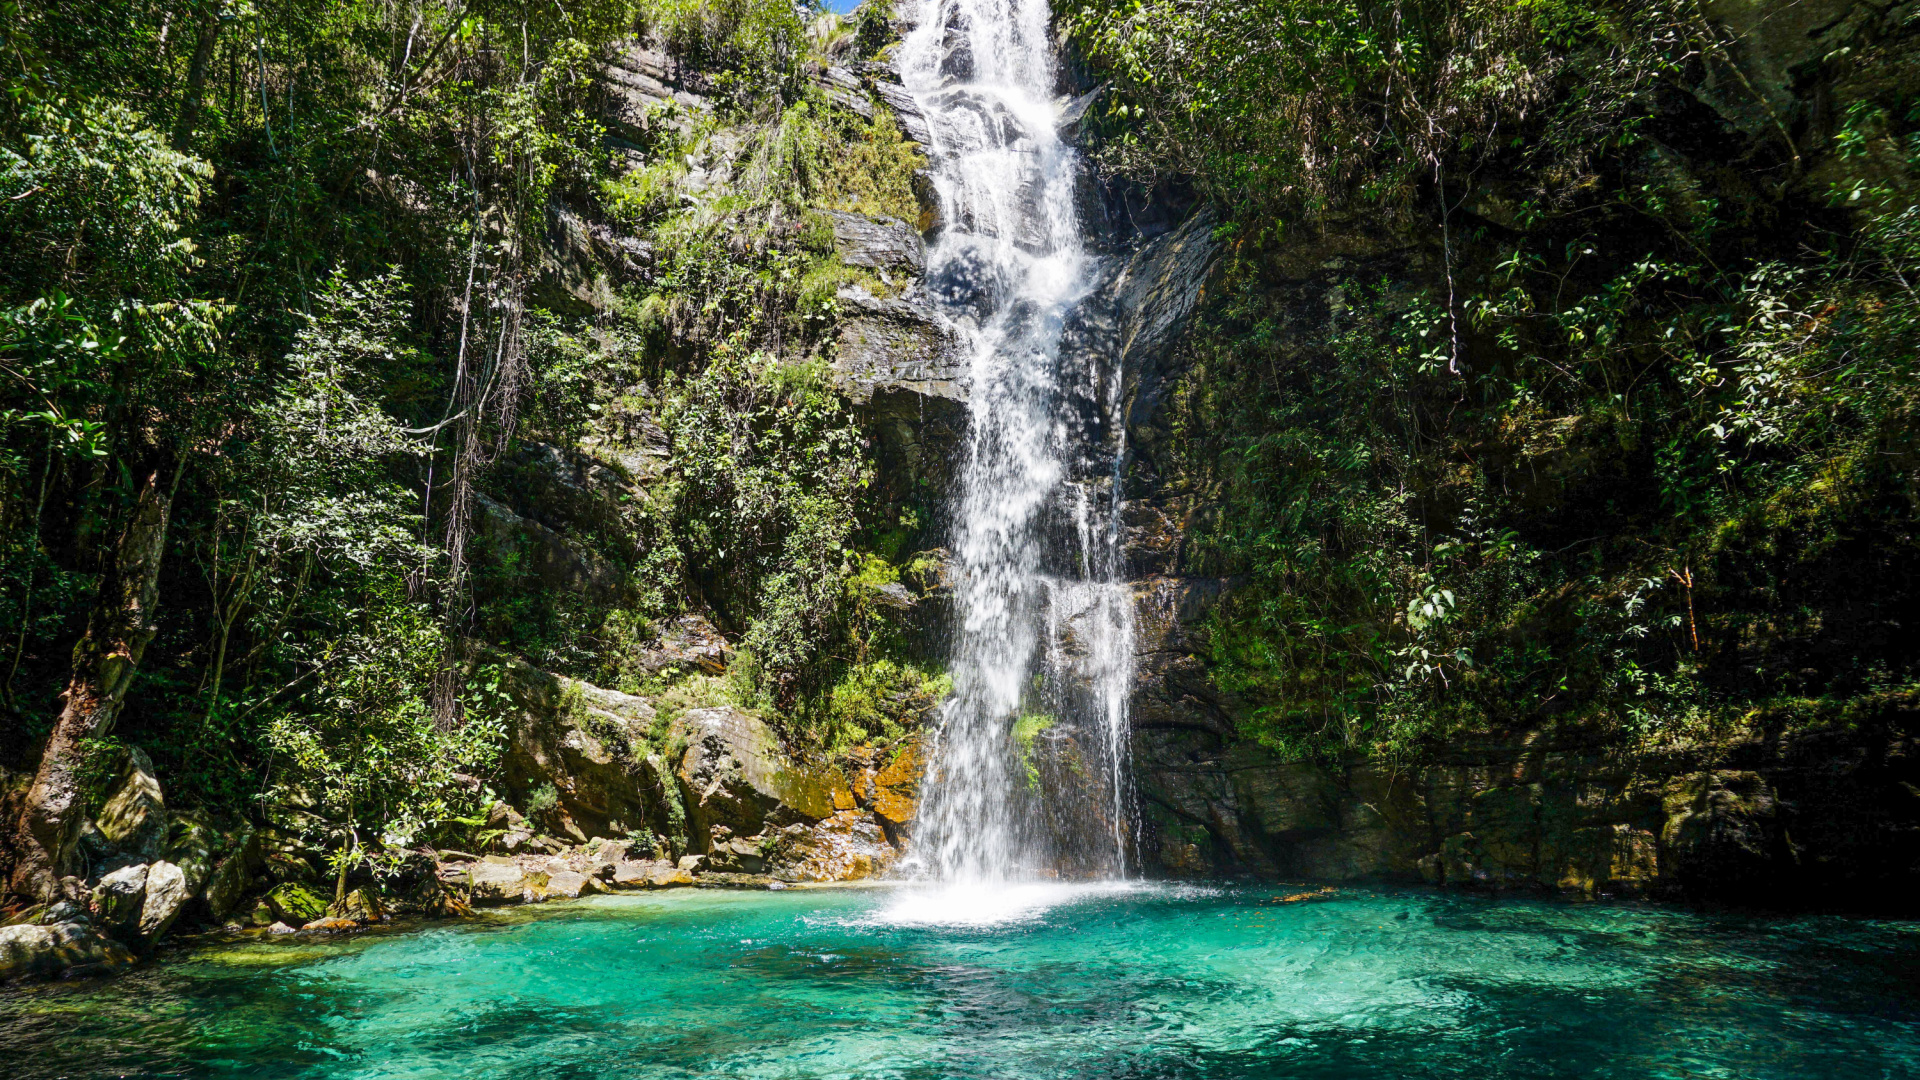 O que fazer Chapada dos Veadeiros: Pontos Turísticos e mais | Cachoeira Santa Bárbara - Parque Nacional da Chapada dos Veadeiros | Conexão123